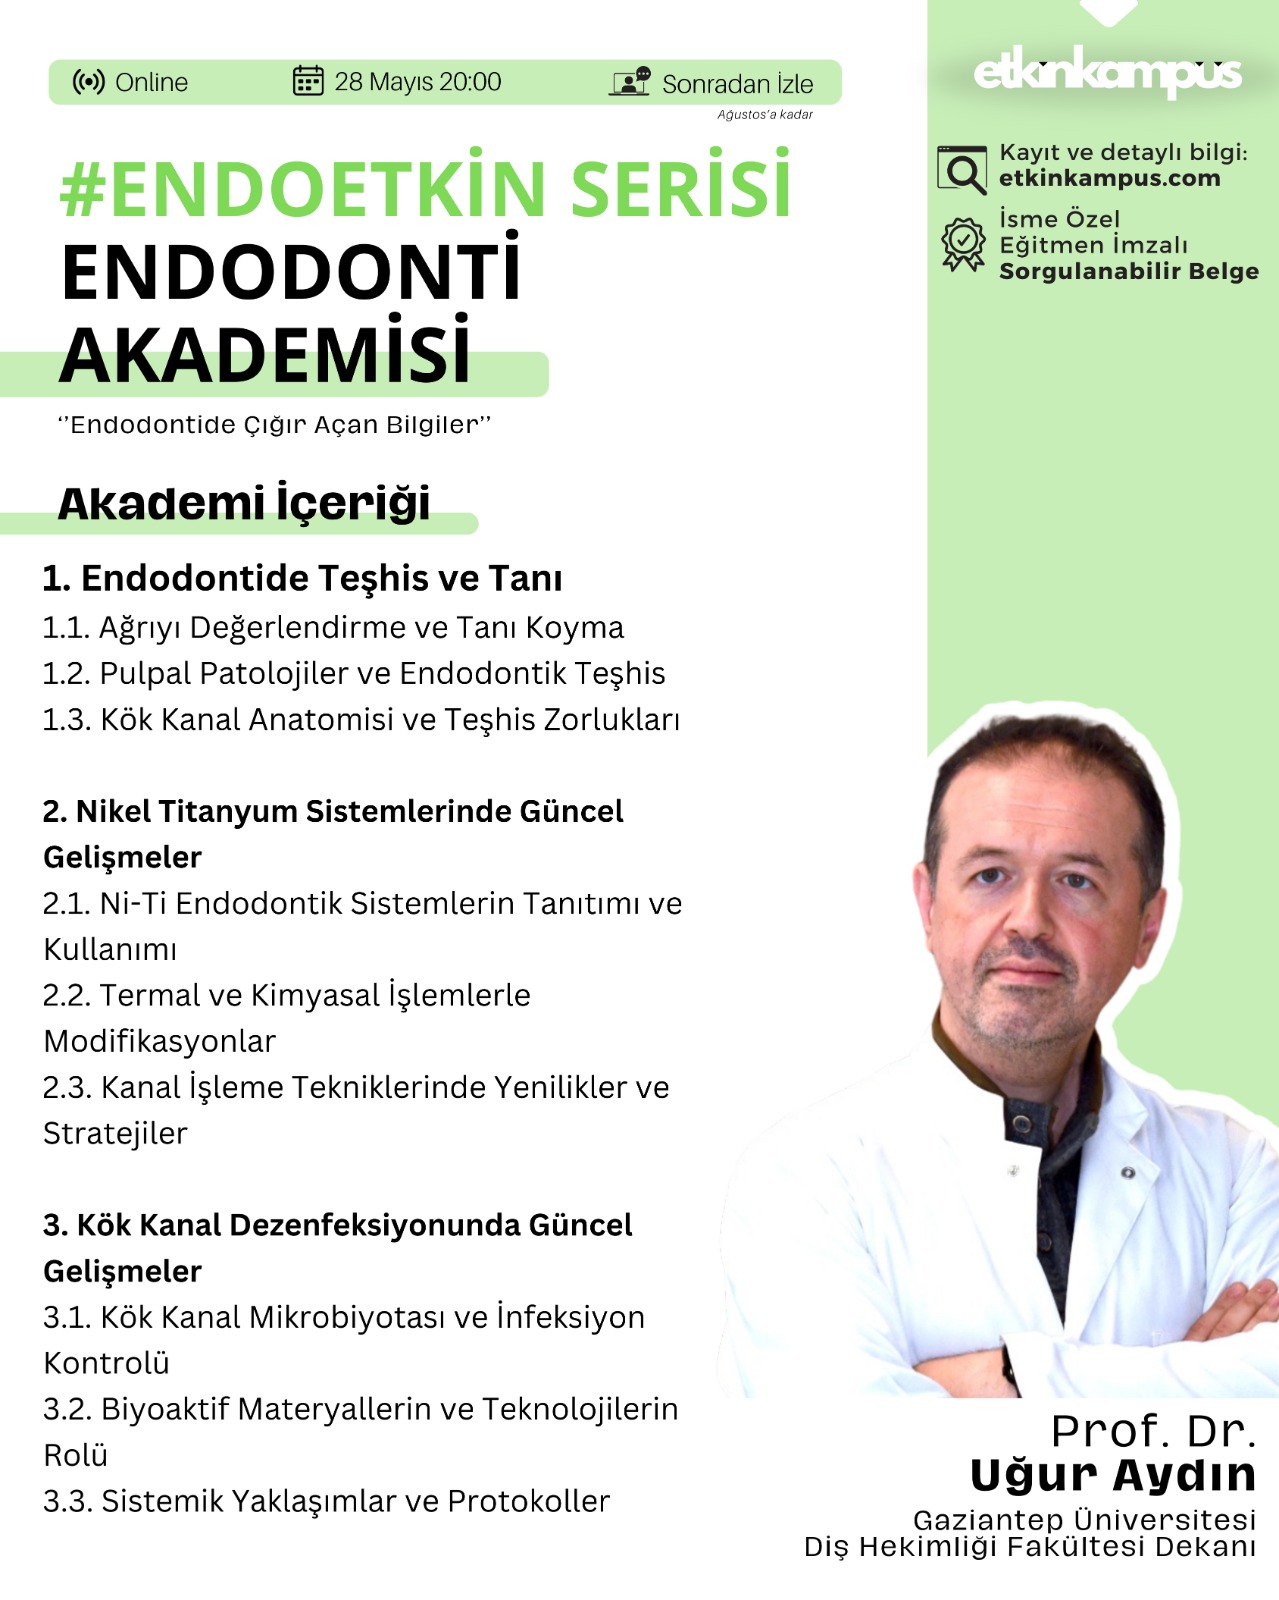 Endodonti Akademisi